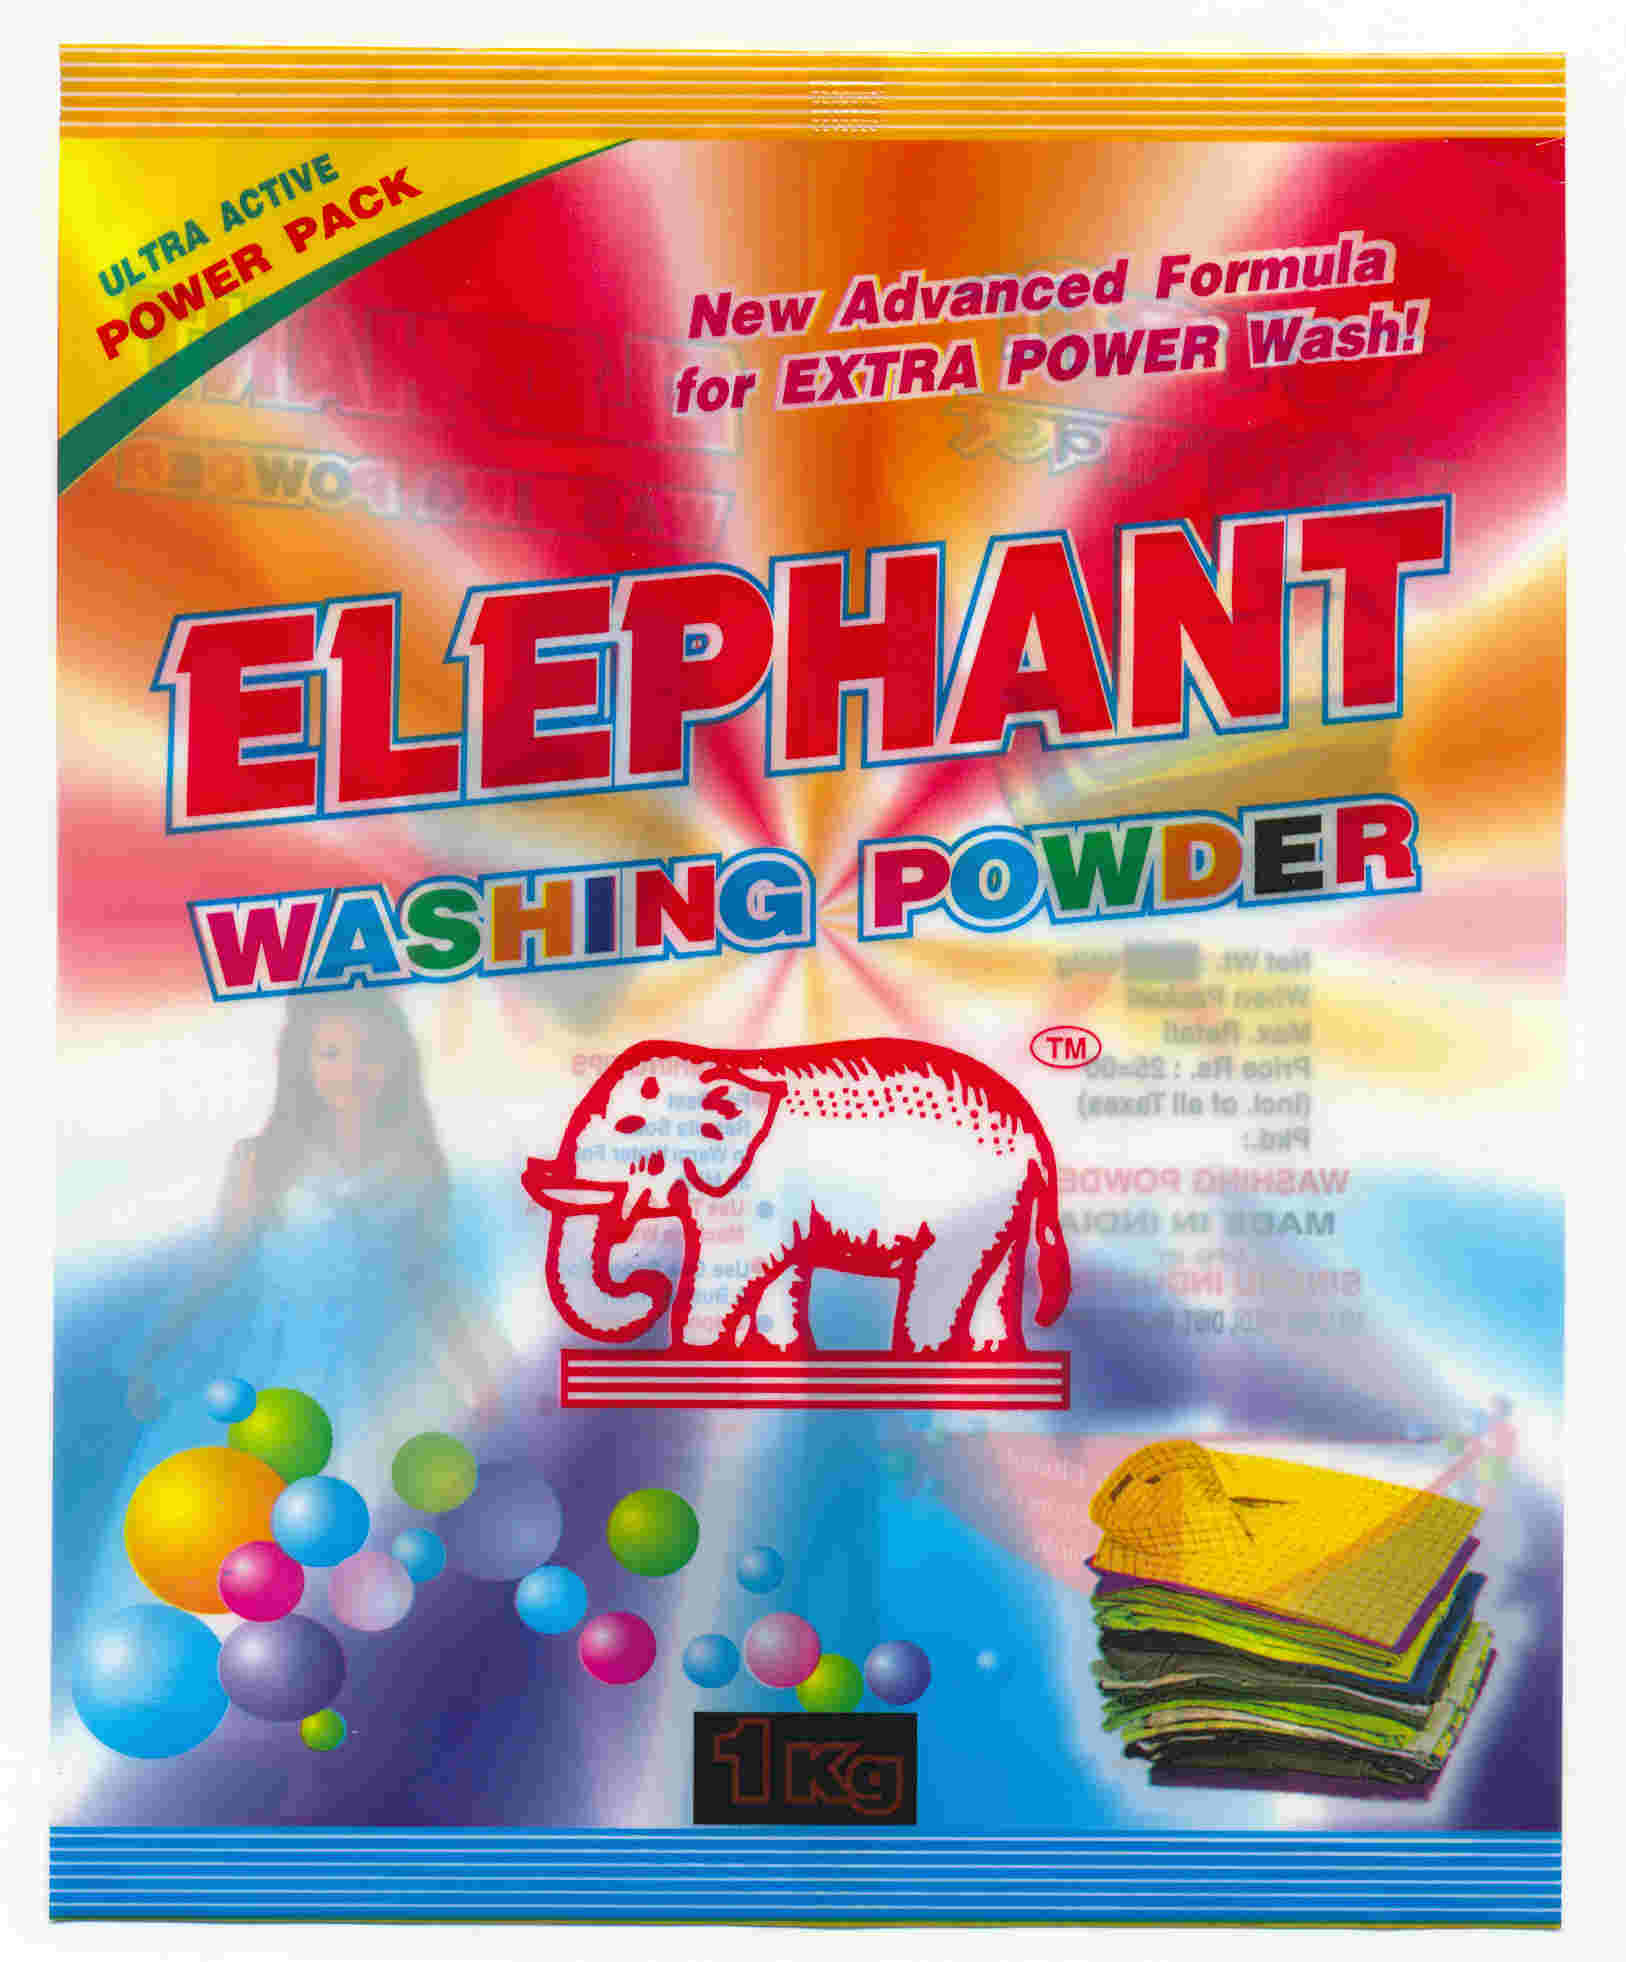 Detergent Powder, Washing Powder Manufacturer Supplier Wholesale Exporter Importer Buyer Trader Retailer in Rajko Gujarat India